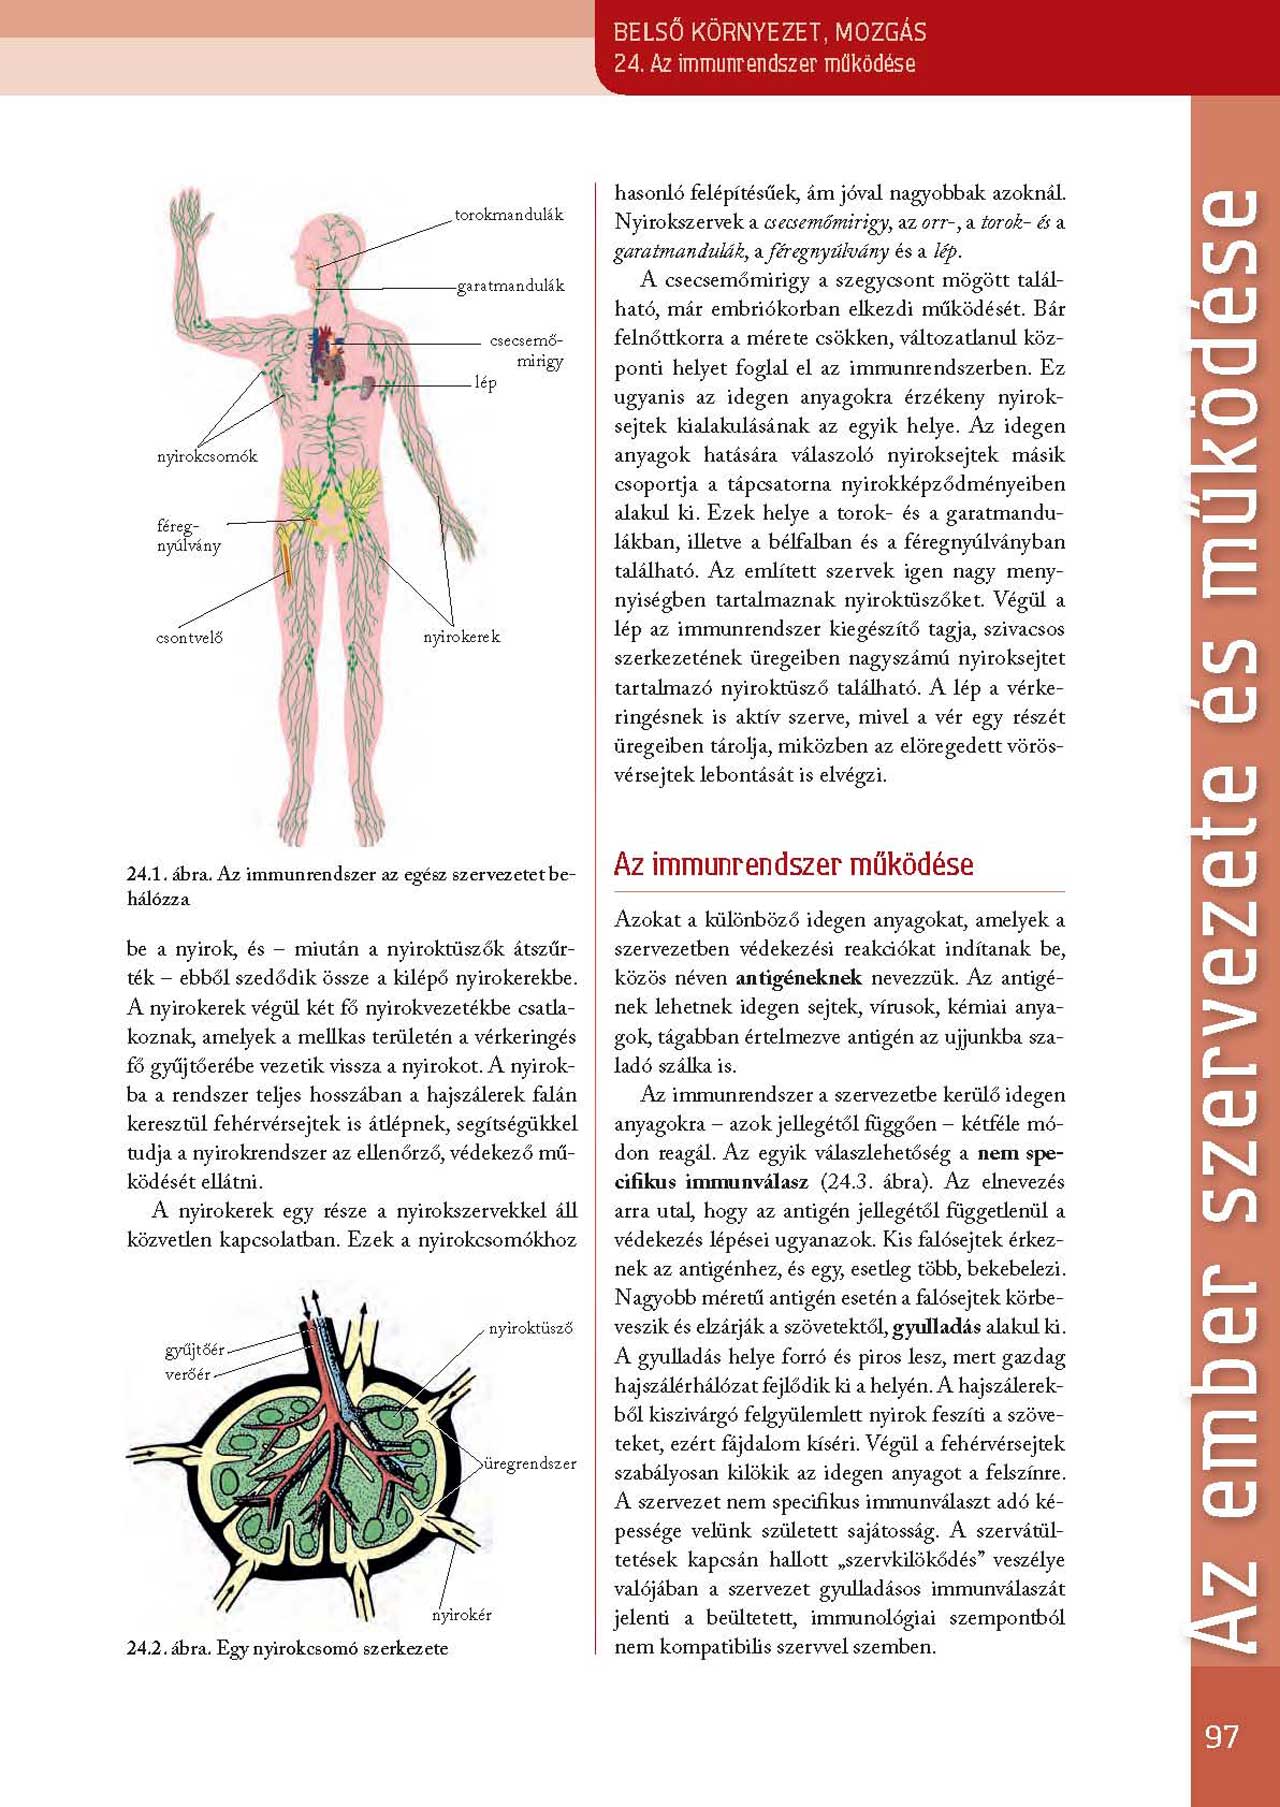 Szerényi G. Biológia tankönyv 9-10, II. kötet, Nat 2020, Oktatási Hivatal (97-99 o.)